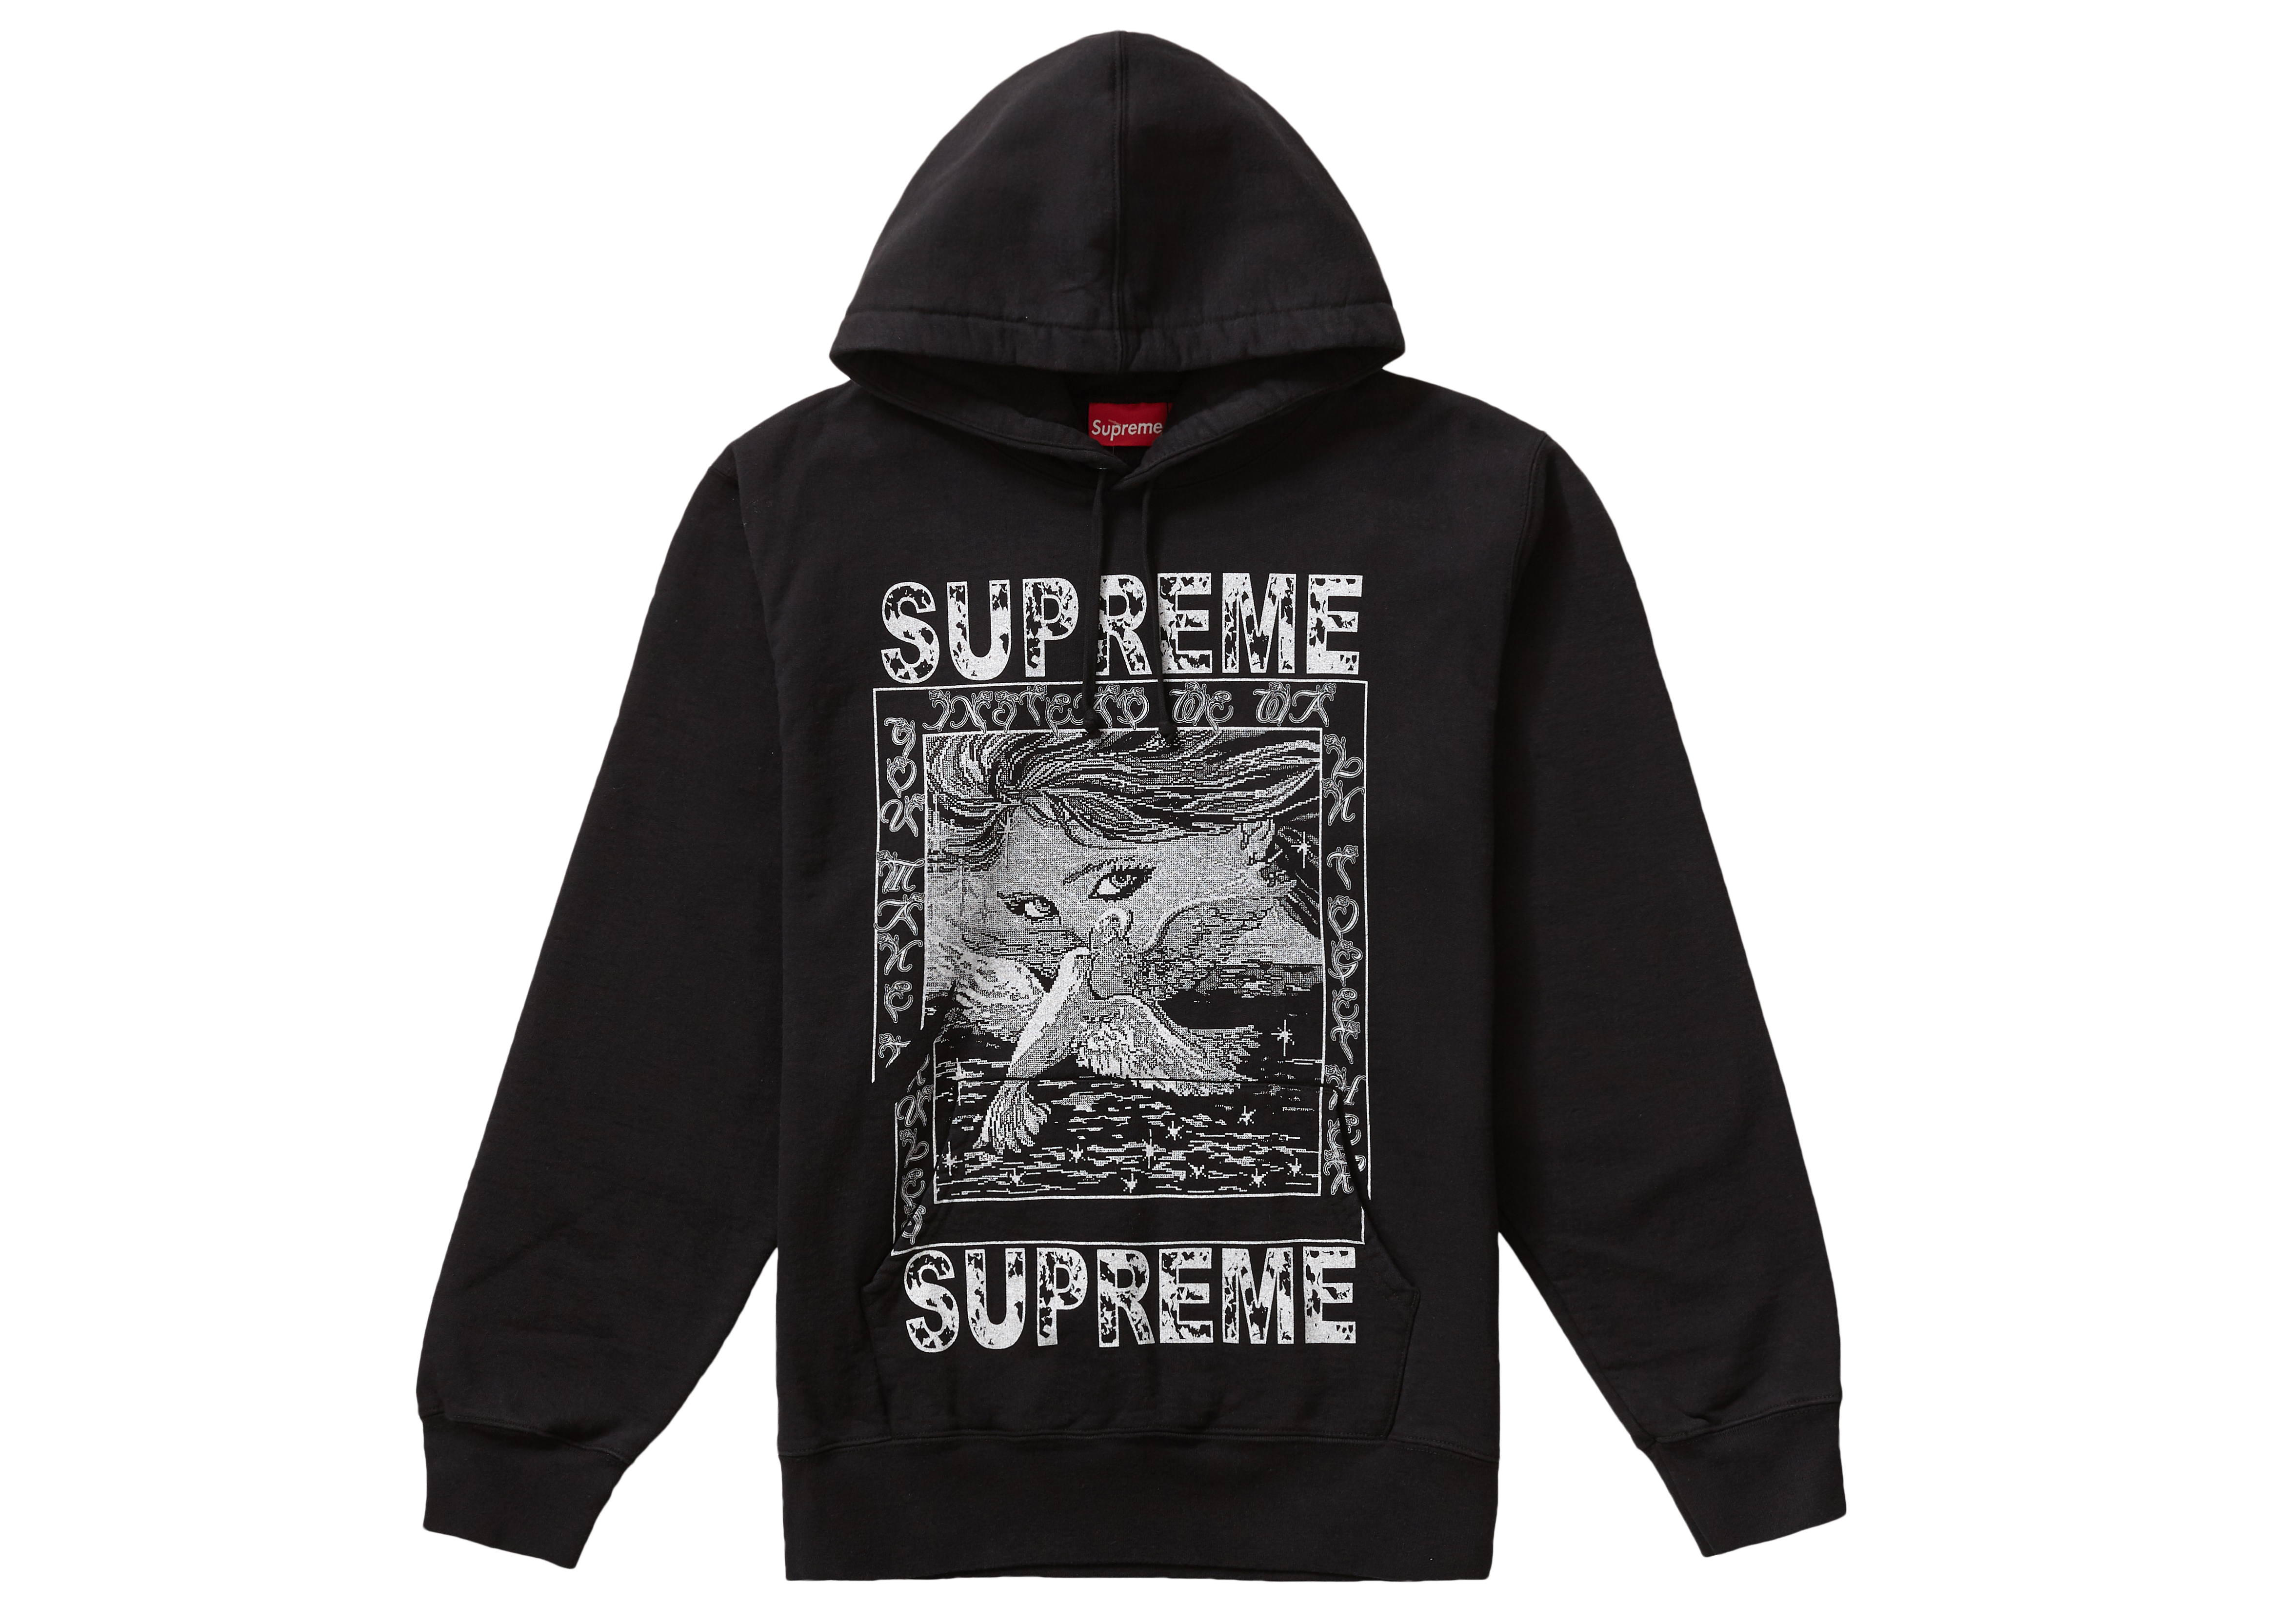 【破格値下げ】 【新品M】Supreme Doves Hooded Sweatshirt 黄 パーカー